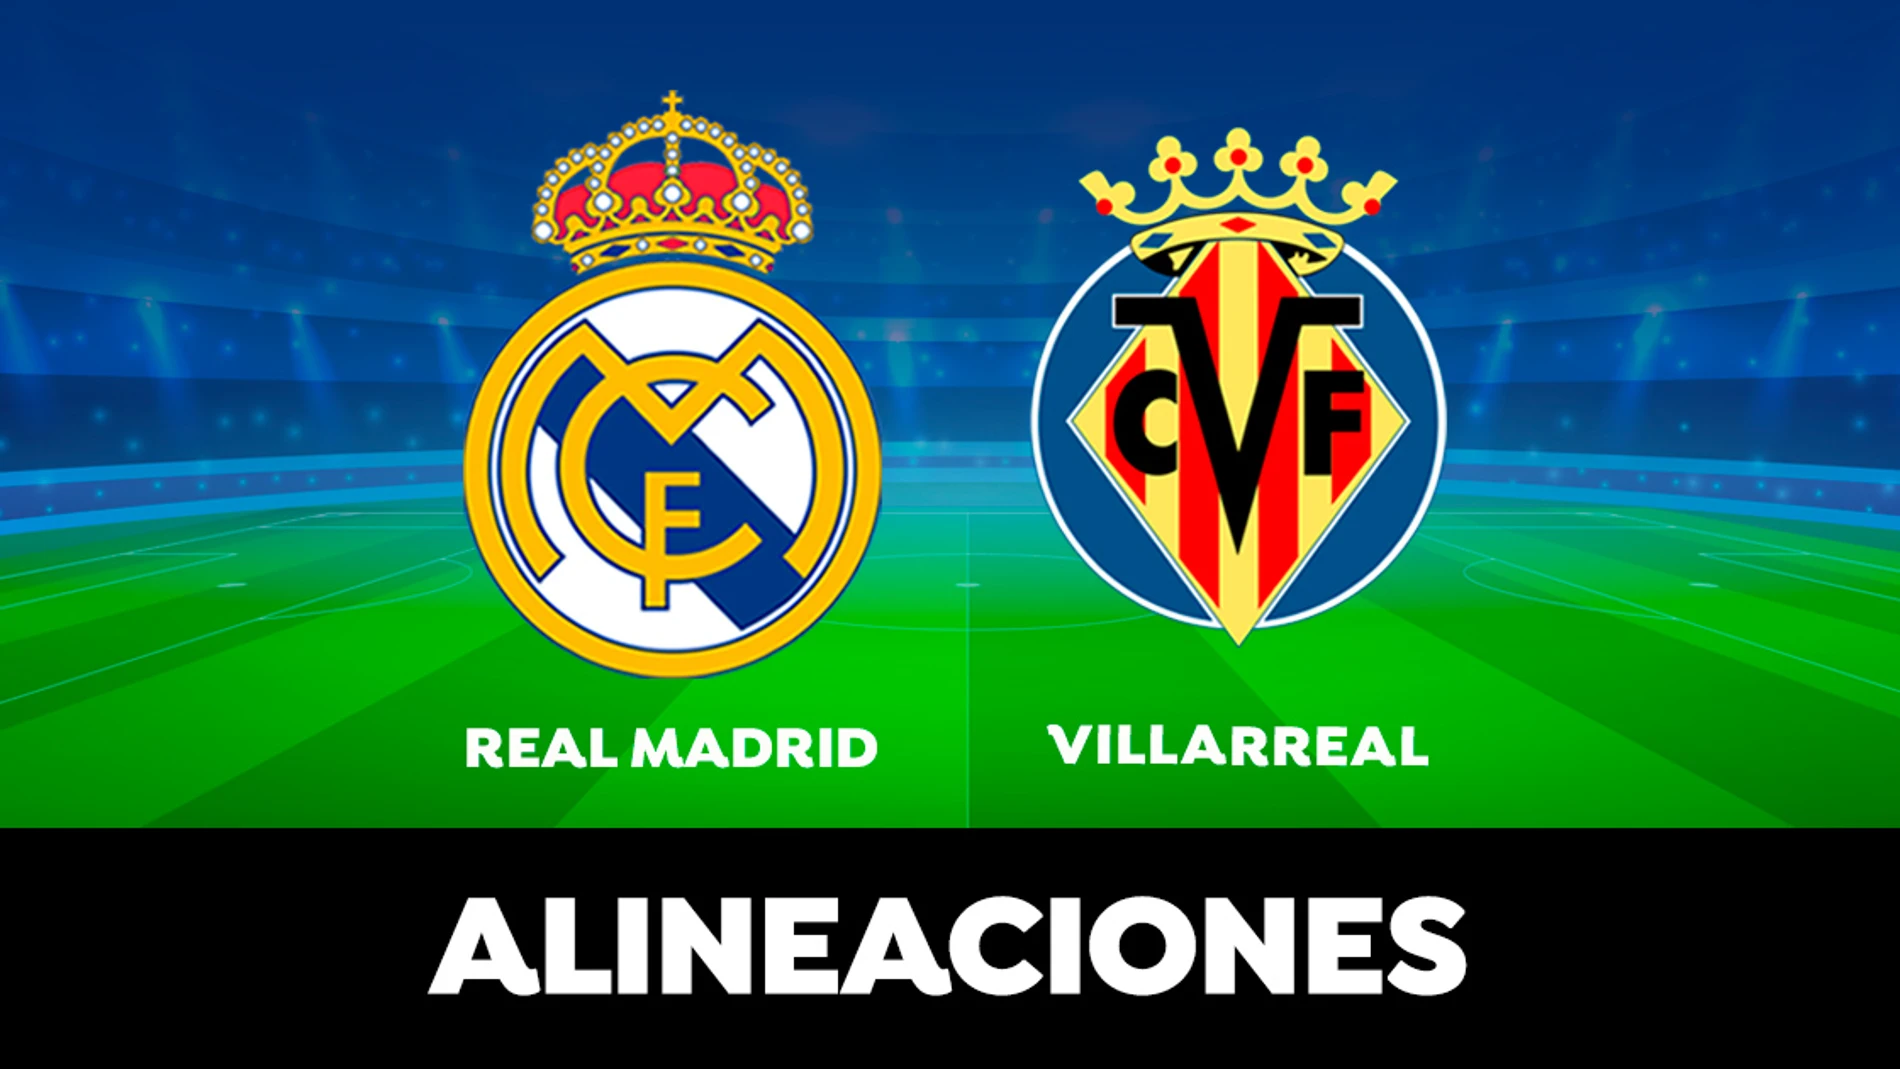 Alineación del Real Madrid hoy contra el Villarreal en el partido de LaLiga